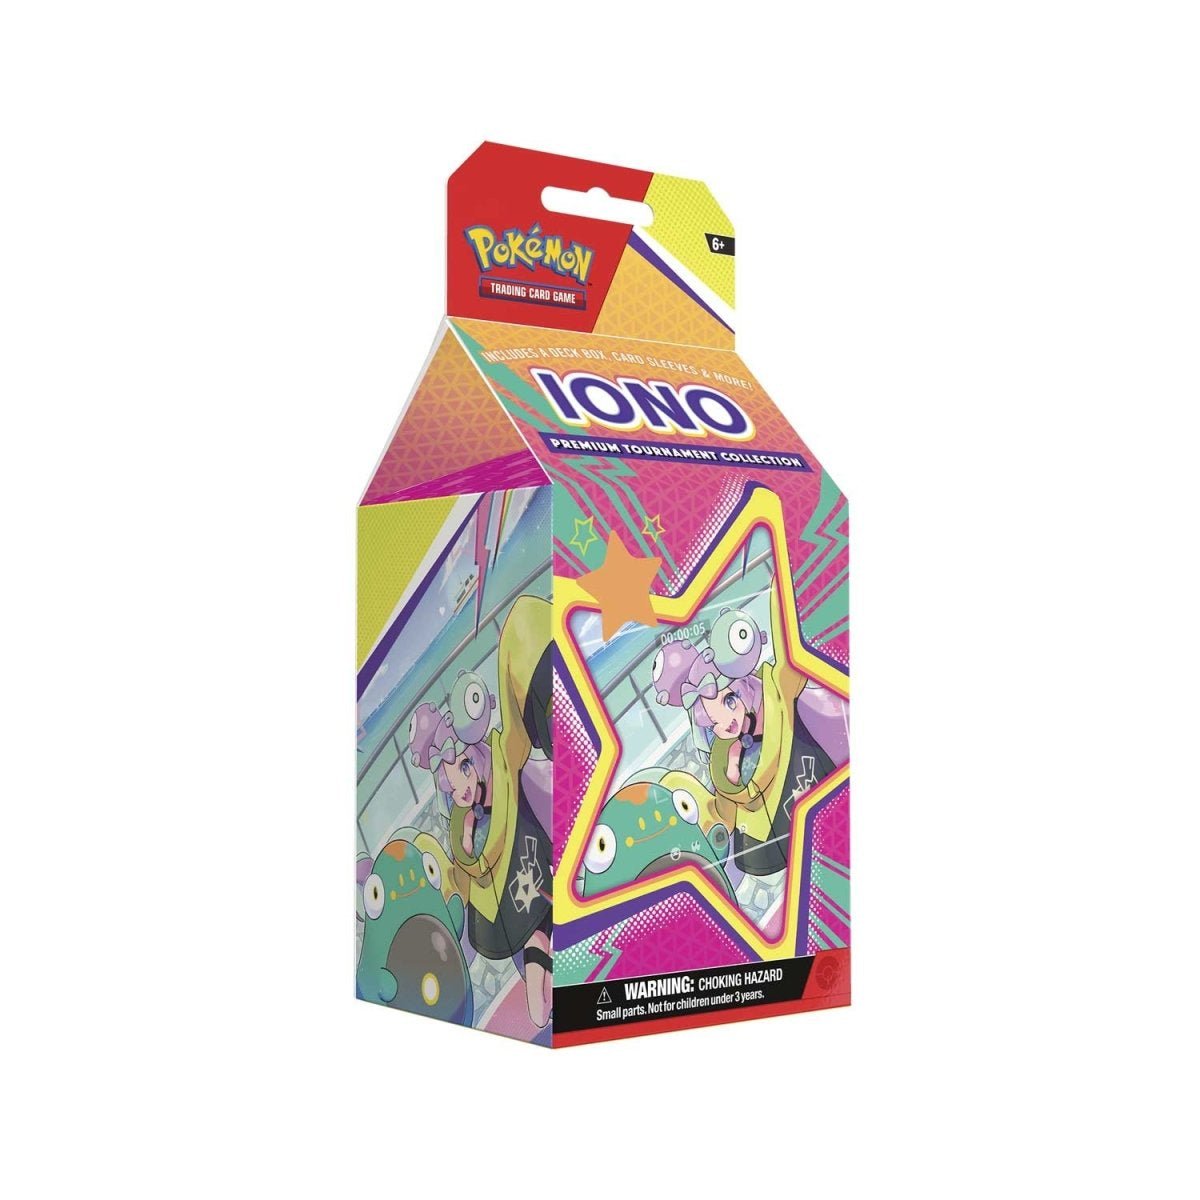 Pokémon TCG: Iono Premium Tournament Collection - GameOn.games